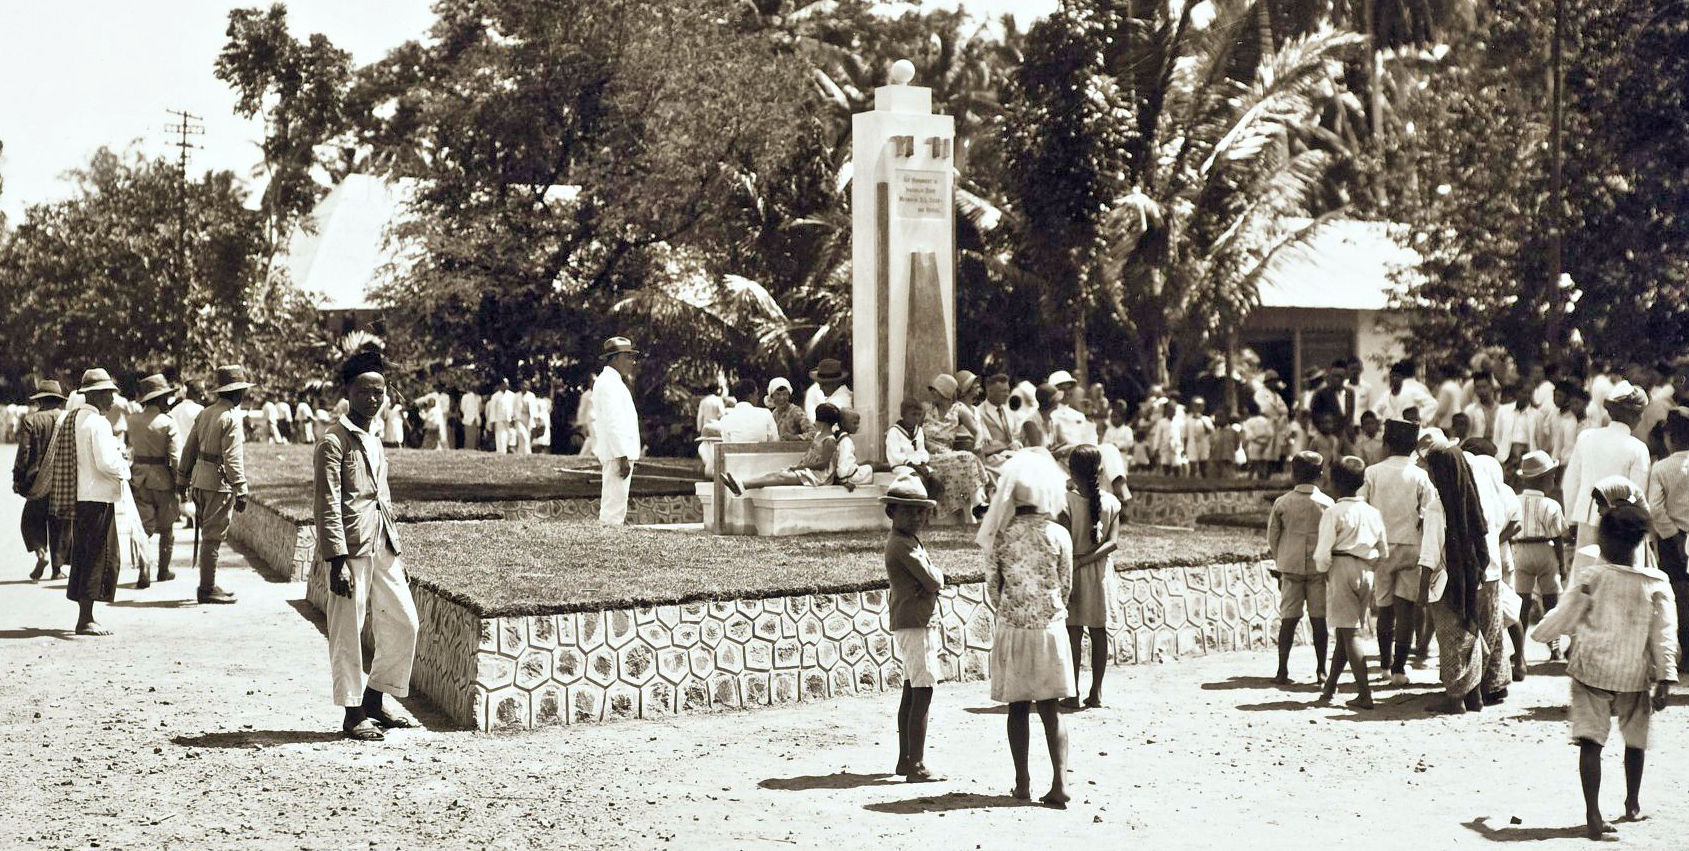 Sebuah monumen di Benkoelen, diresmikan oleh Mrs. S.L. Zieck-van Hengel-istri dari penduduk